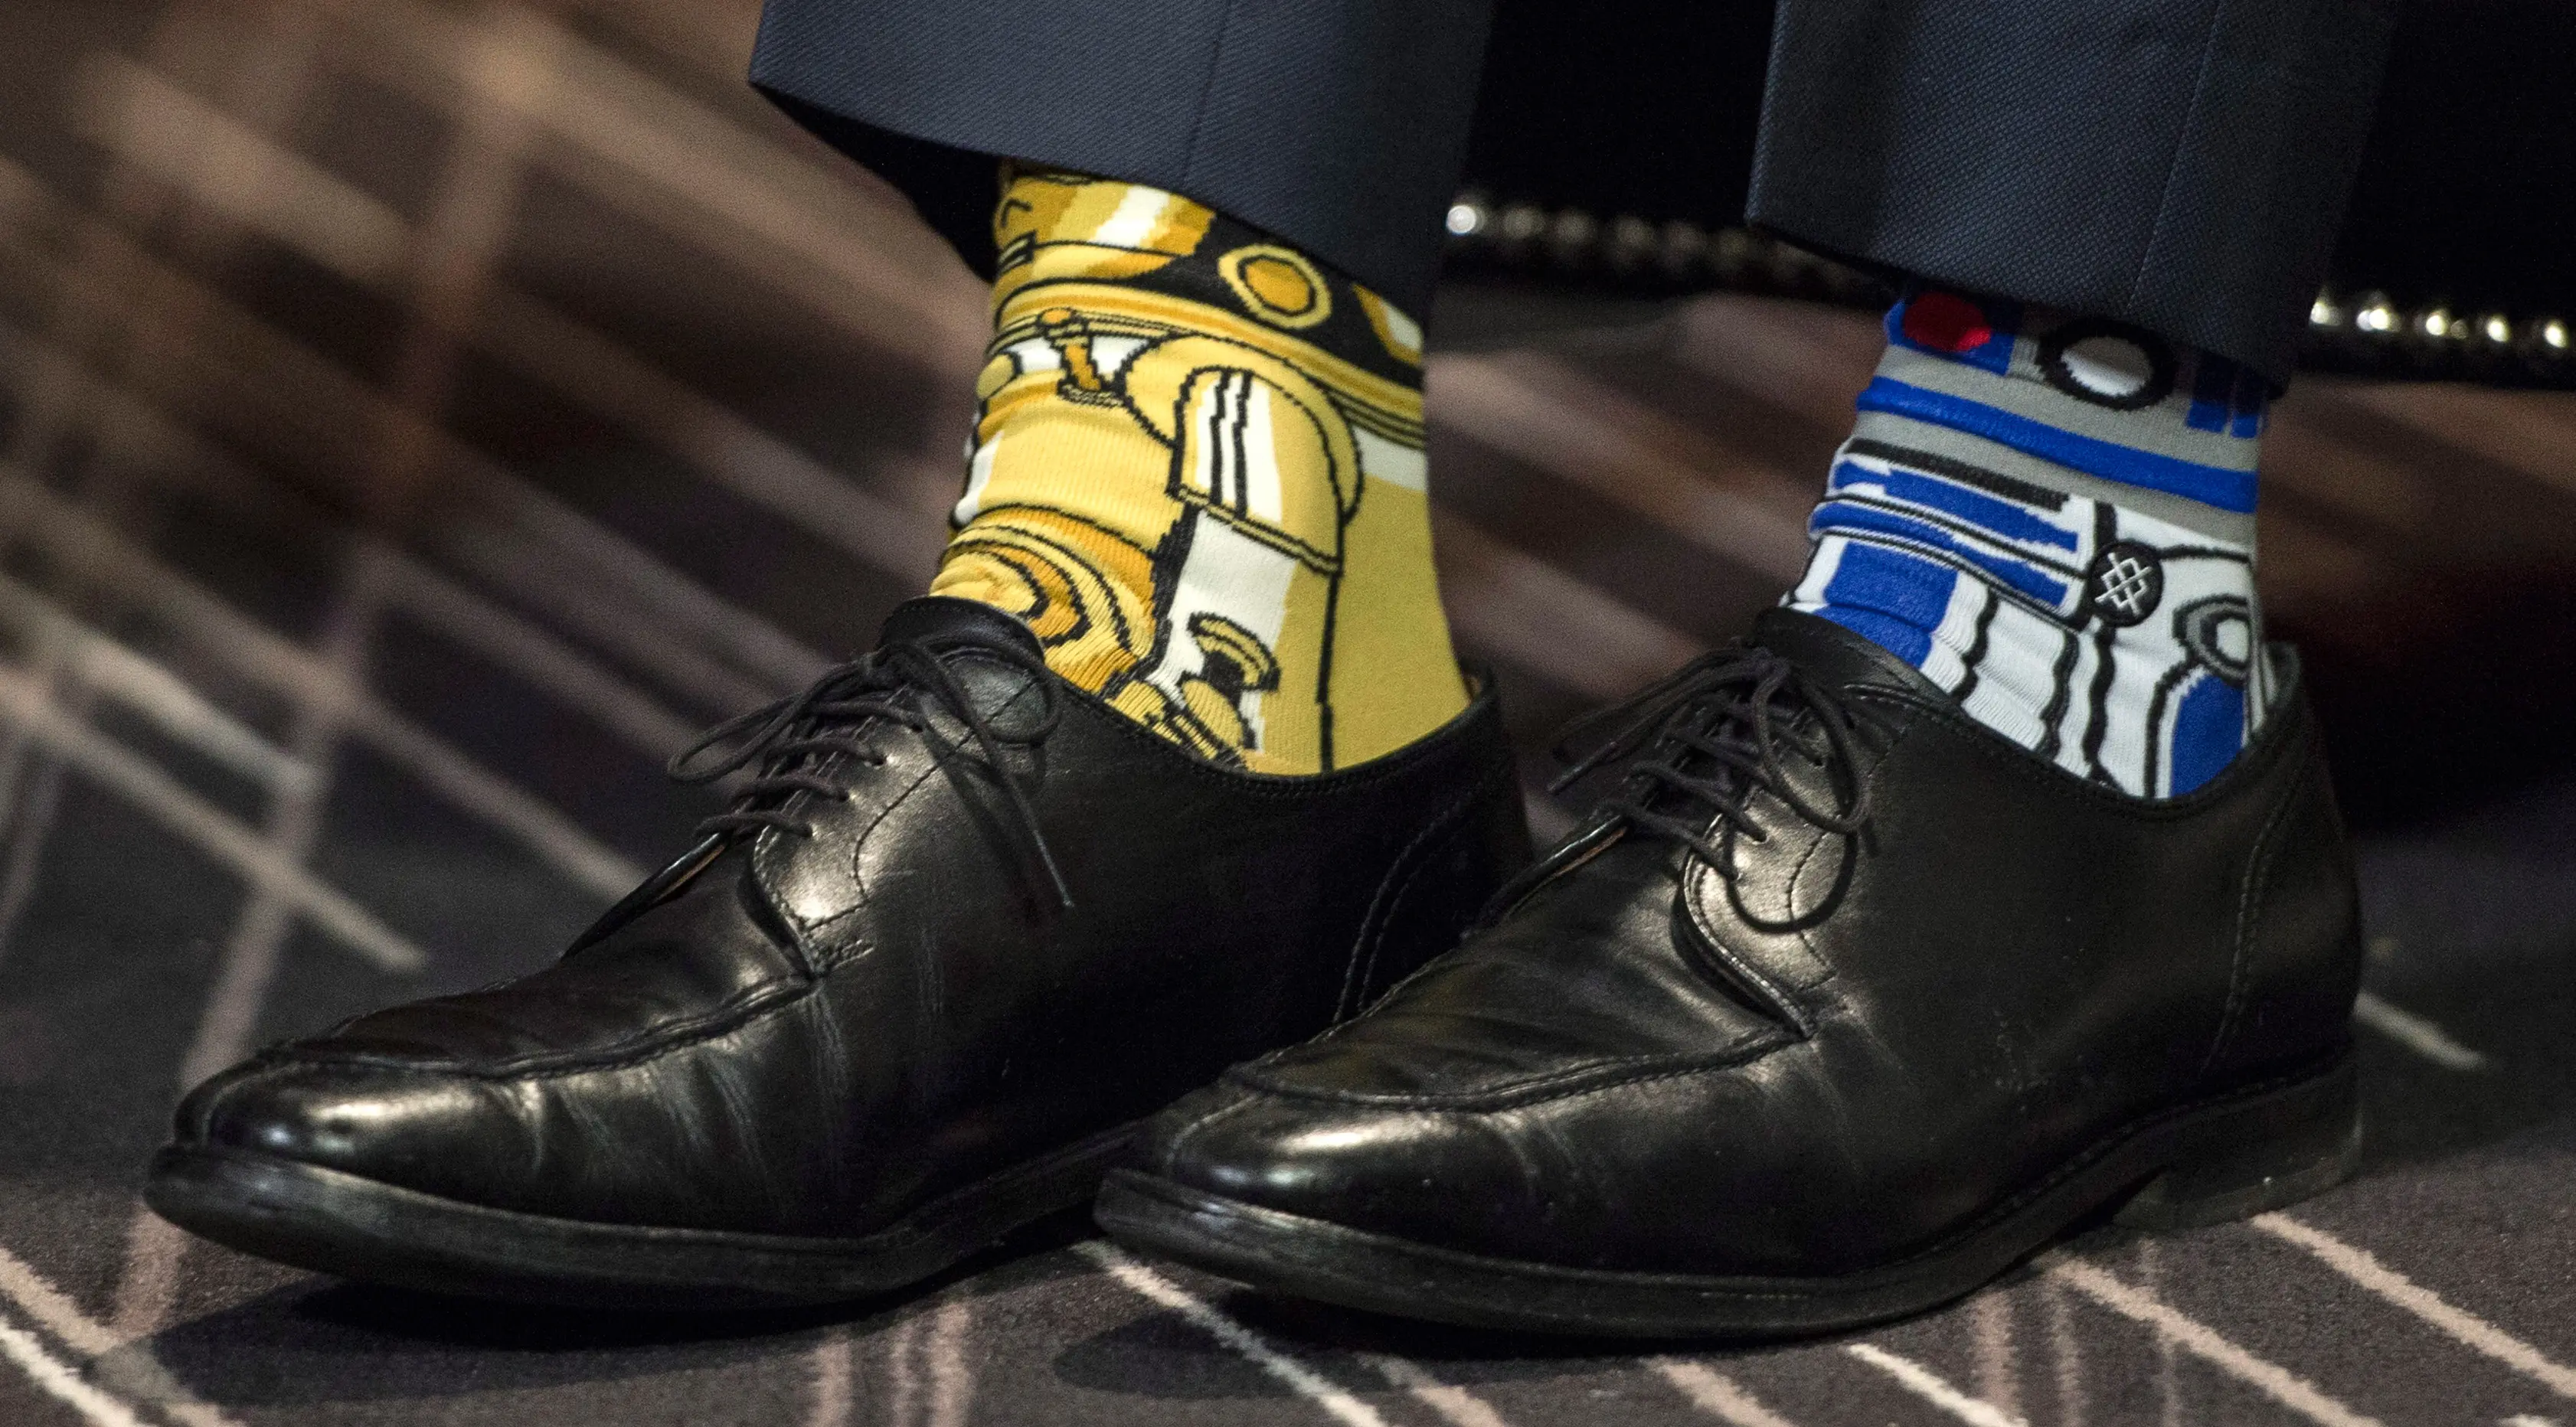 Kaos kaki yang dikenakan PM Kanada Justin Trudeau saat melakukan pertemuan dengan PM Irlandia, Enda Kenny di Montreal, Kamis (4/5). Tanggal 4 Mei kemarin merupakan Hari Star Wars atau Star Wars Day. (Paul Chiasson/The Canadian Press via AP)